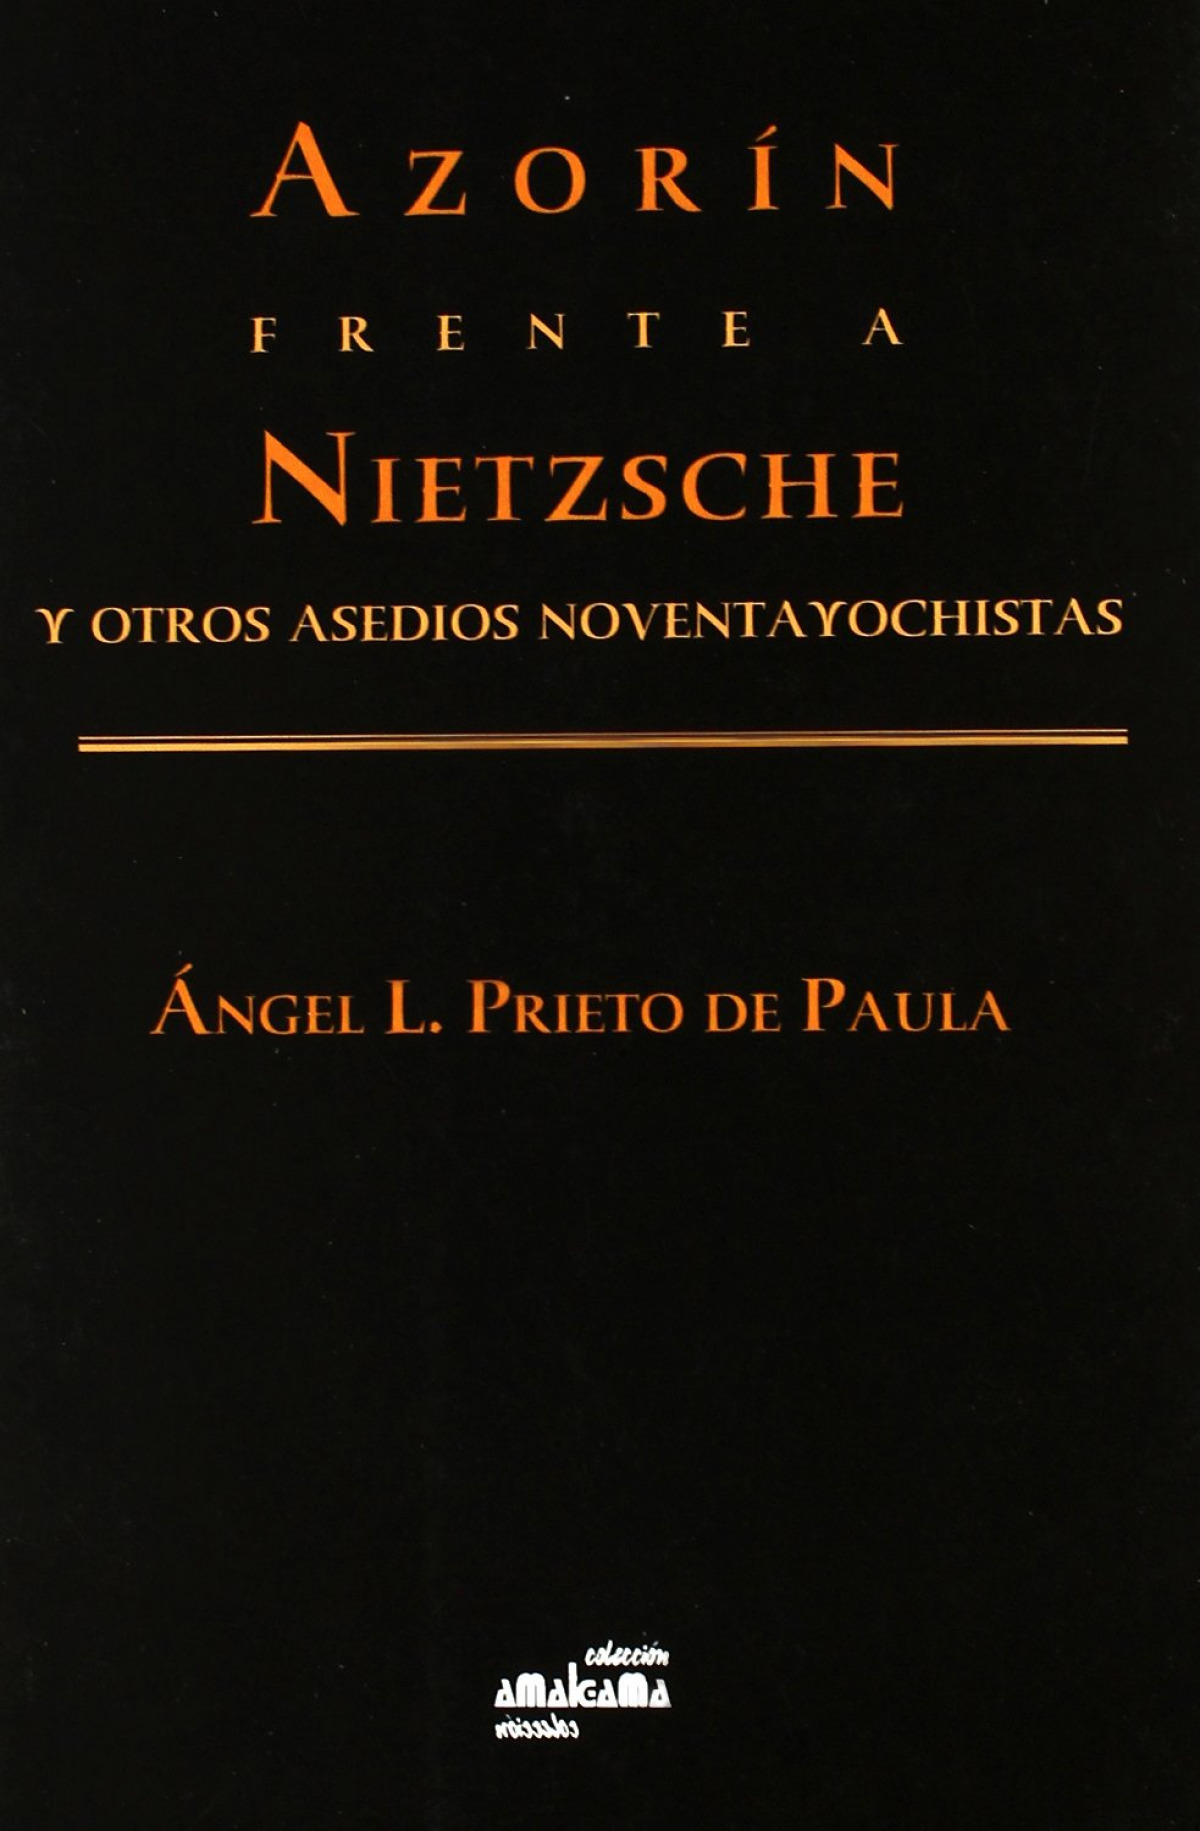 Azorín frente a Nietzsche y otros ensayos noventayochistas - Prieto de Paula, Angel Luis